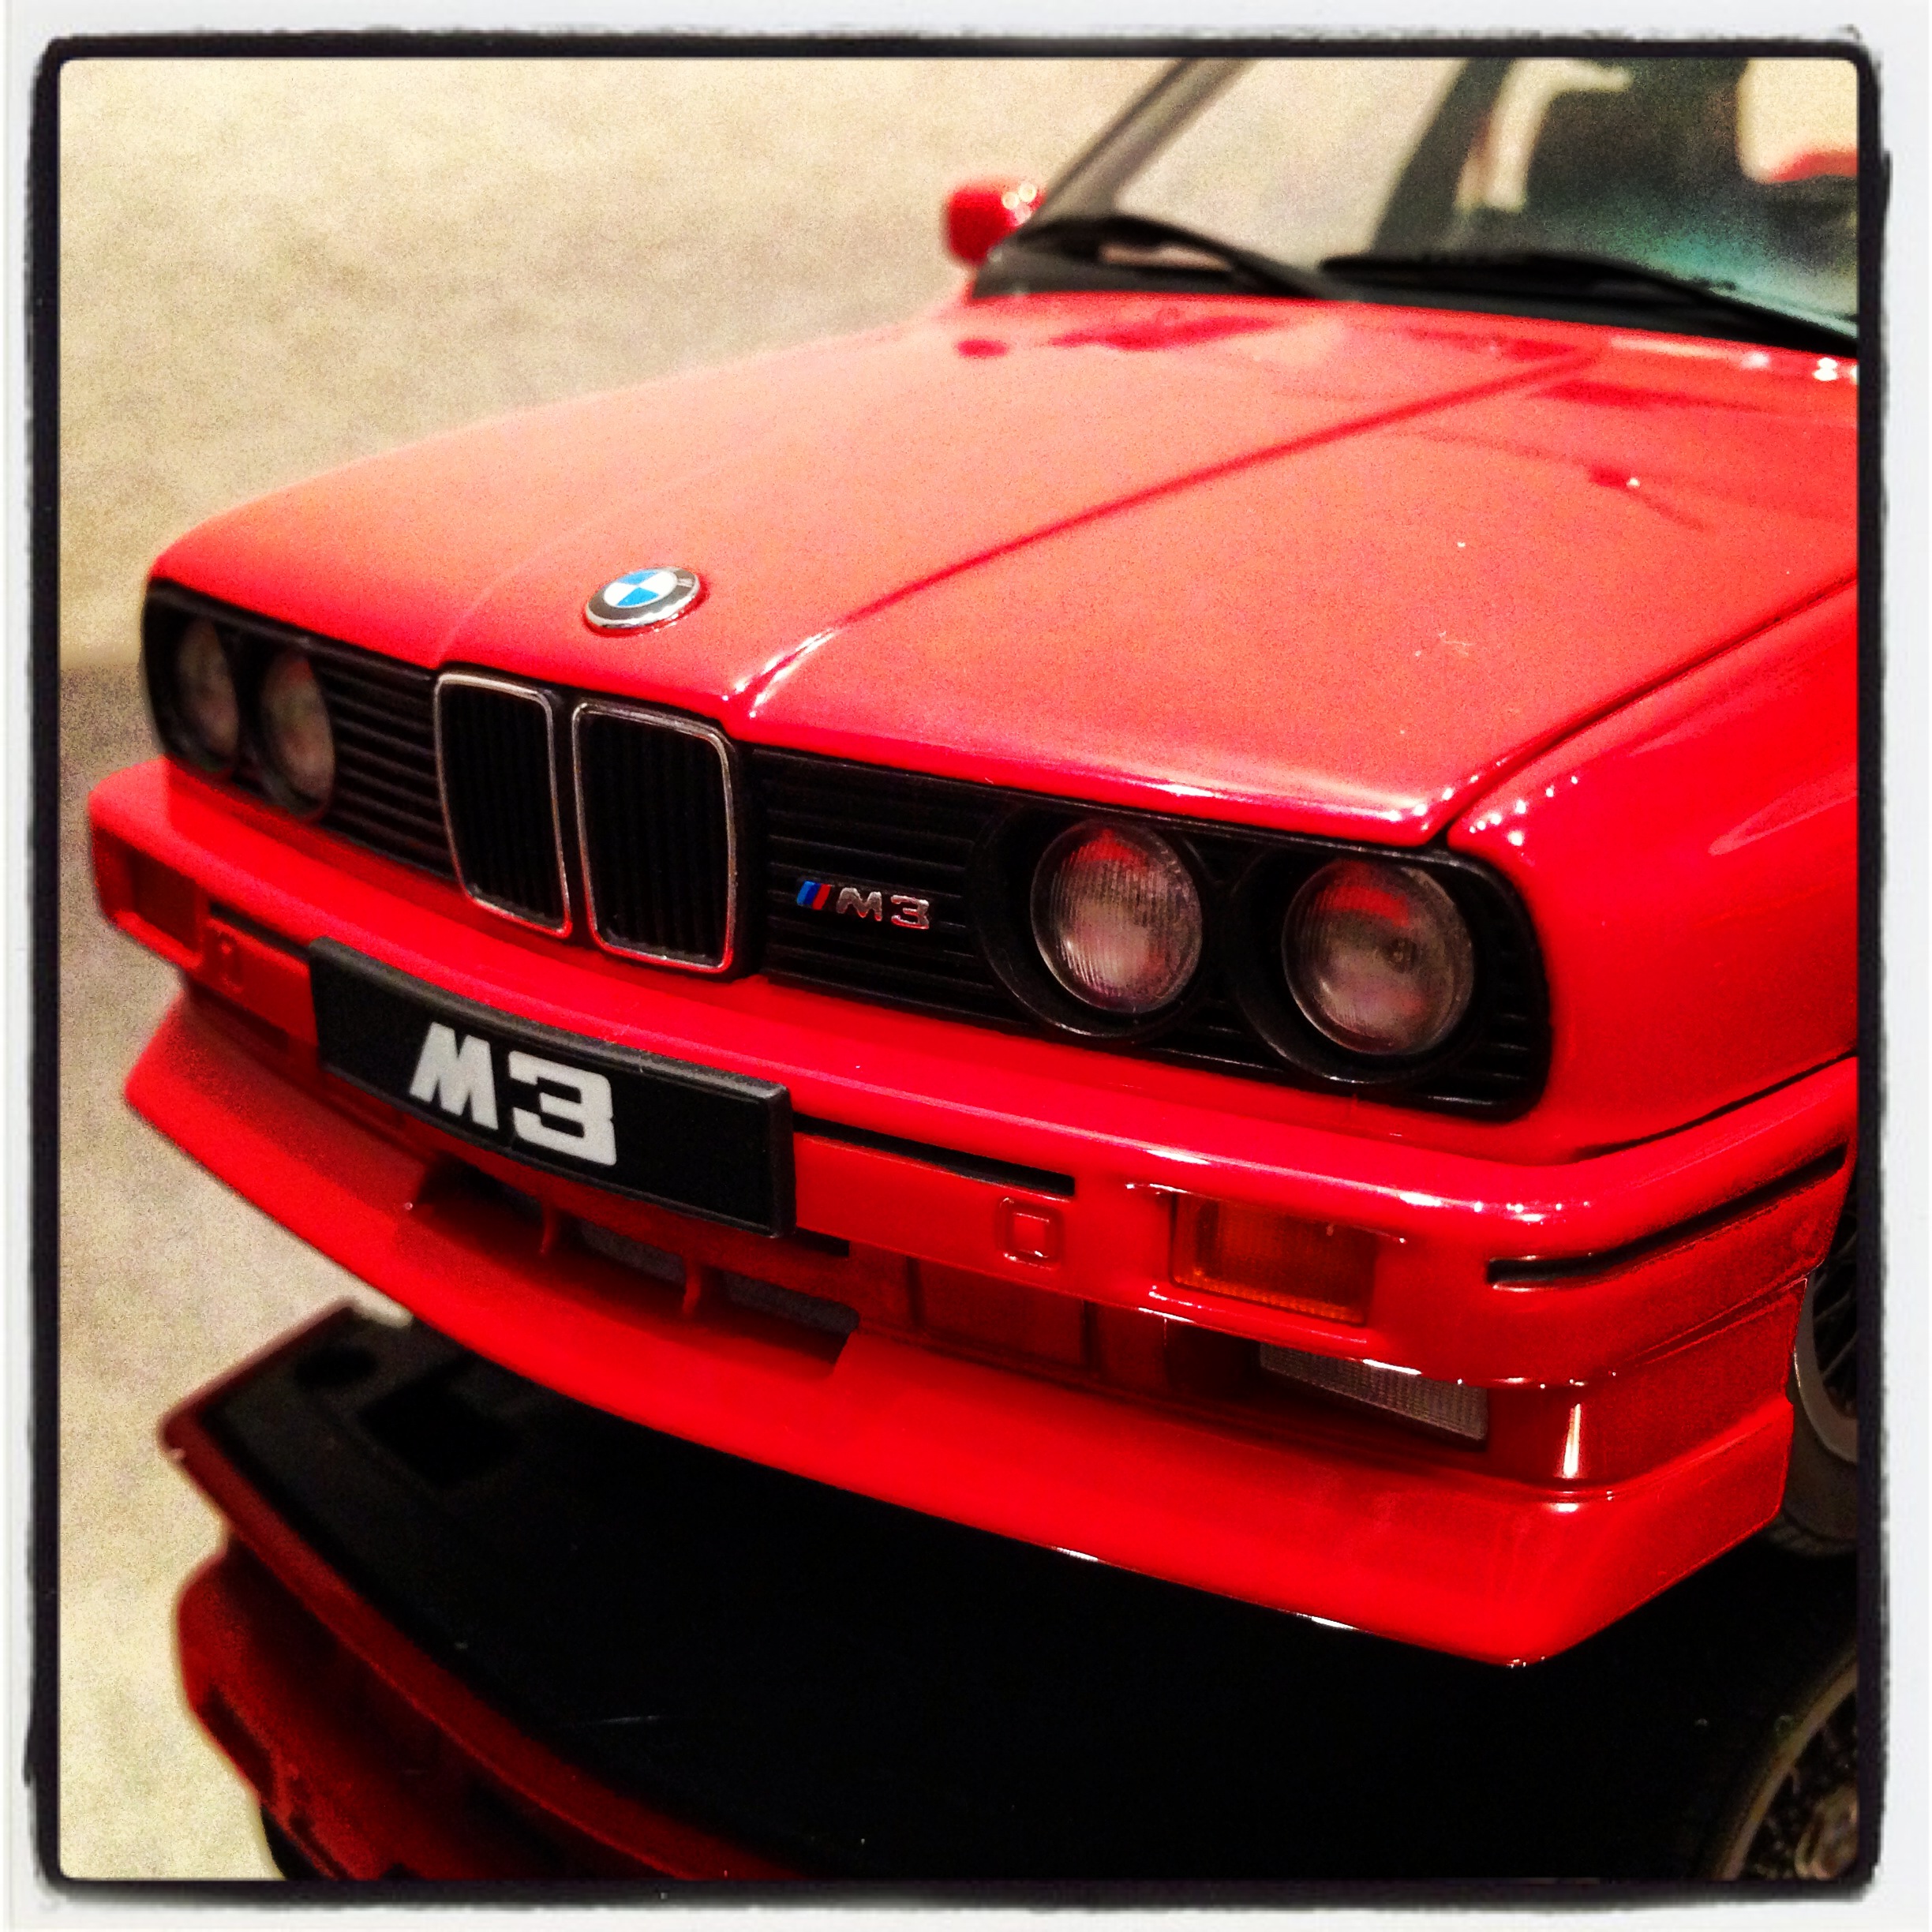 BMW M3 (E30) sport evolution, Cecotto edition 1989, red (autoart)